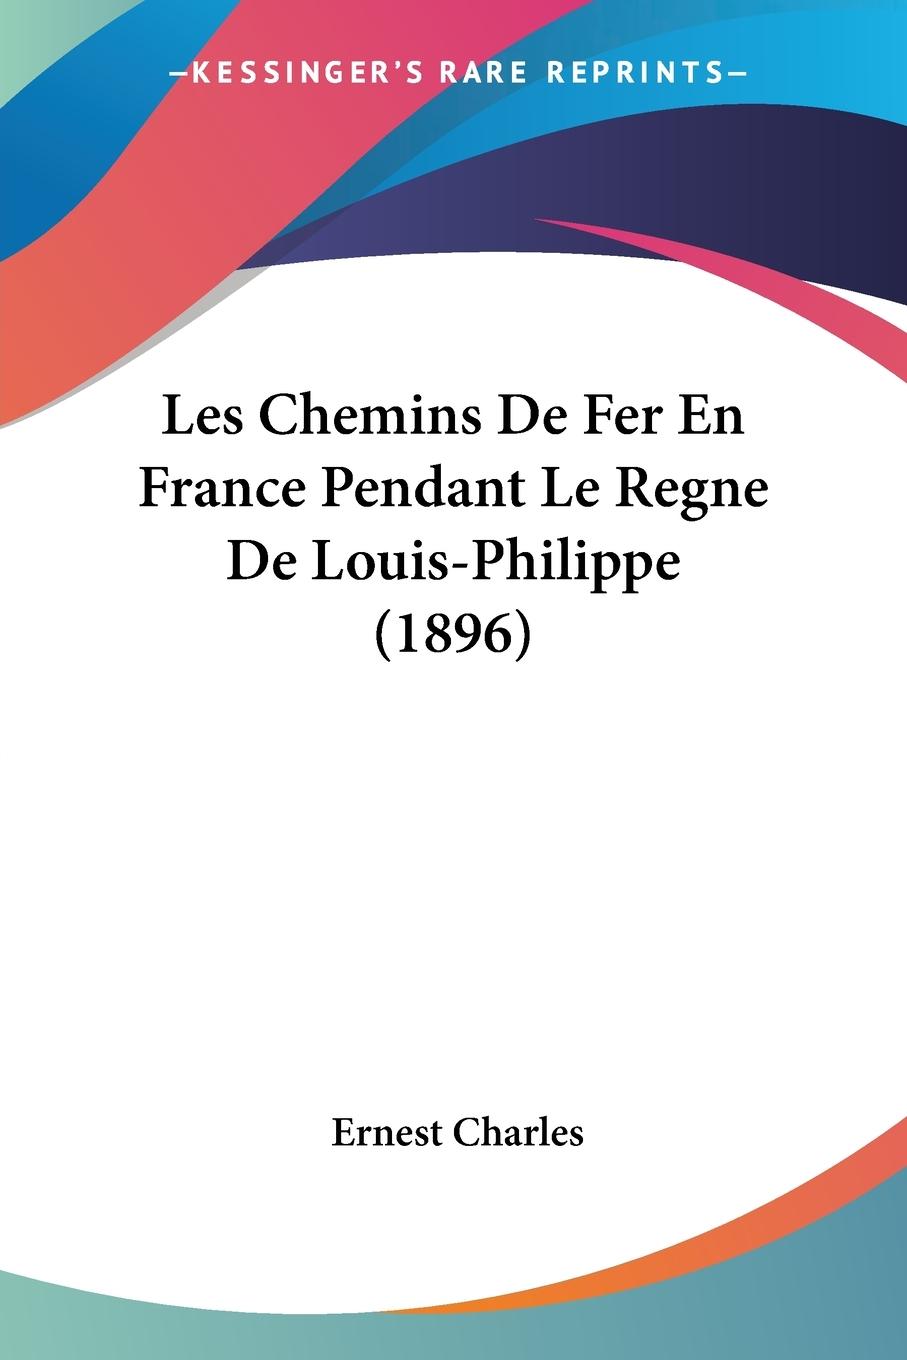 Les Chemins De Fer En France Pendant Le Regne De Louis-Philippe (1896) - Charles, Ernest